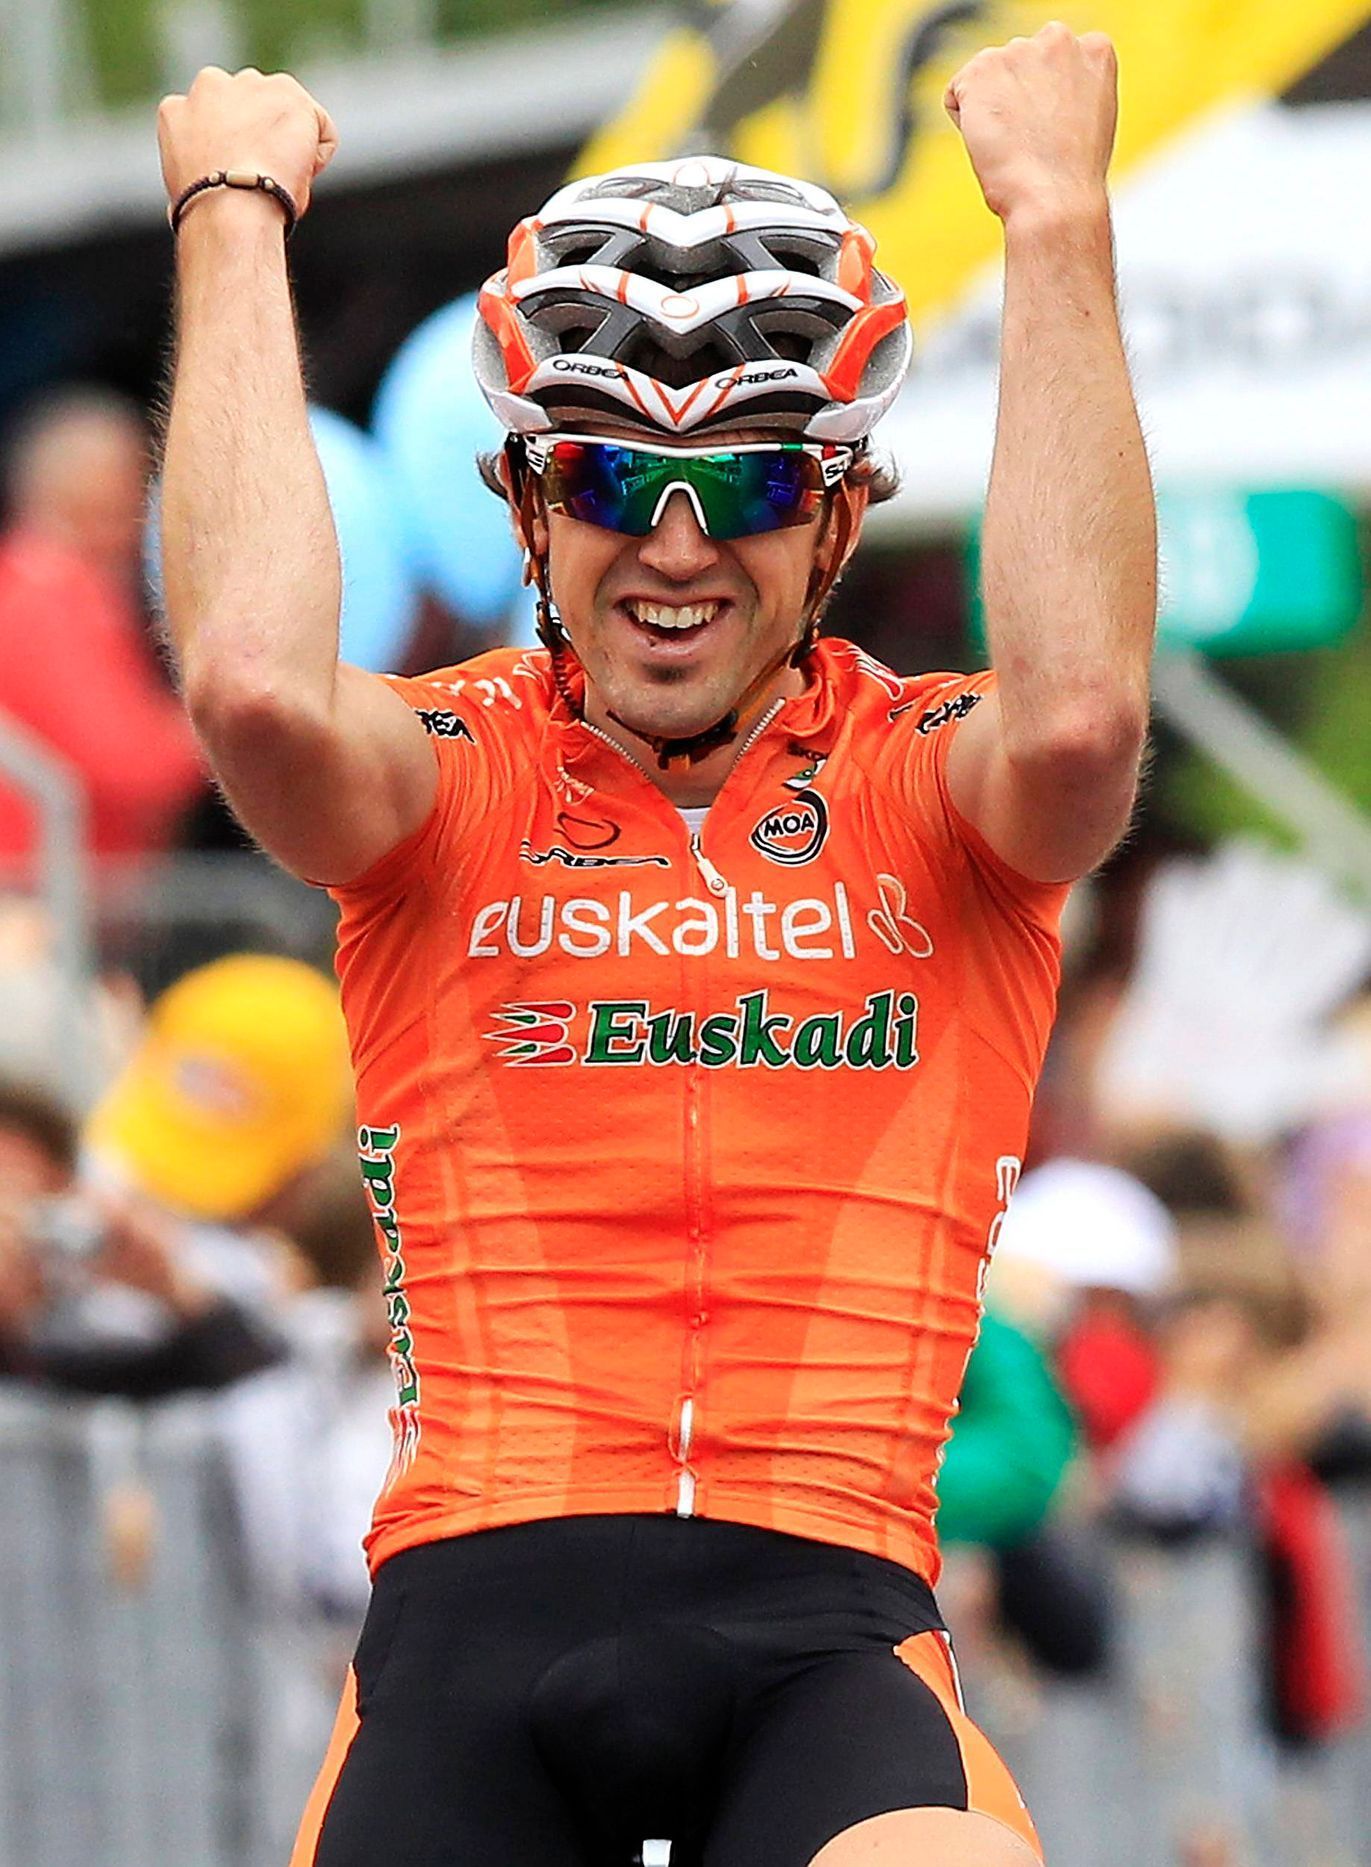 Španělský cyklista Jon Izagirre Insausti slaví etapový triumf na Giro d´Italia